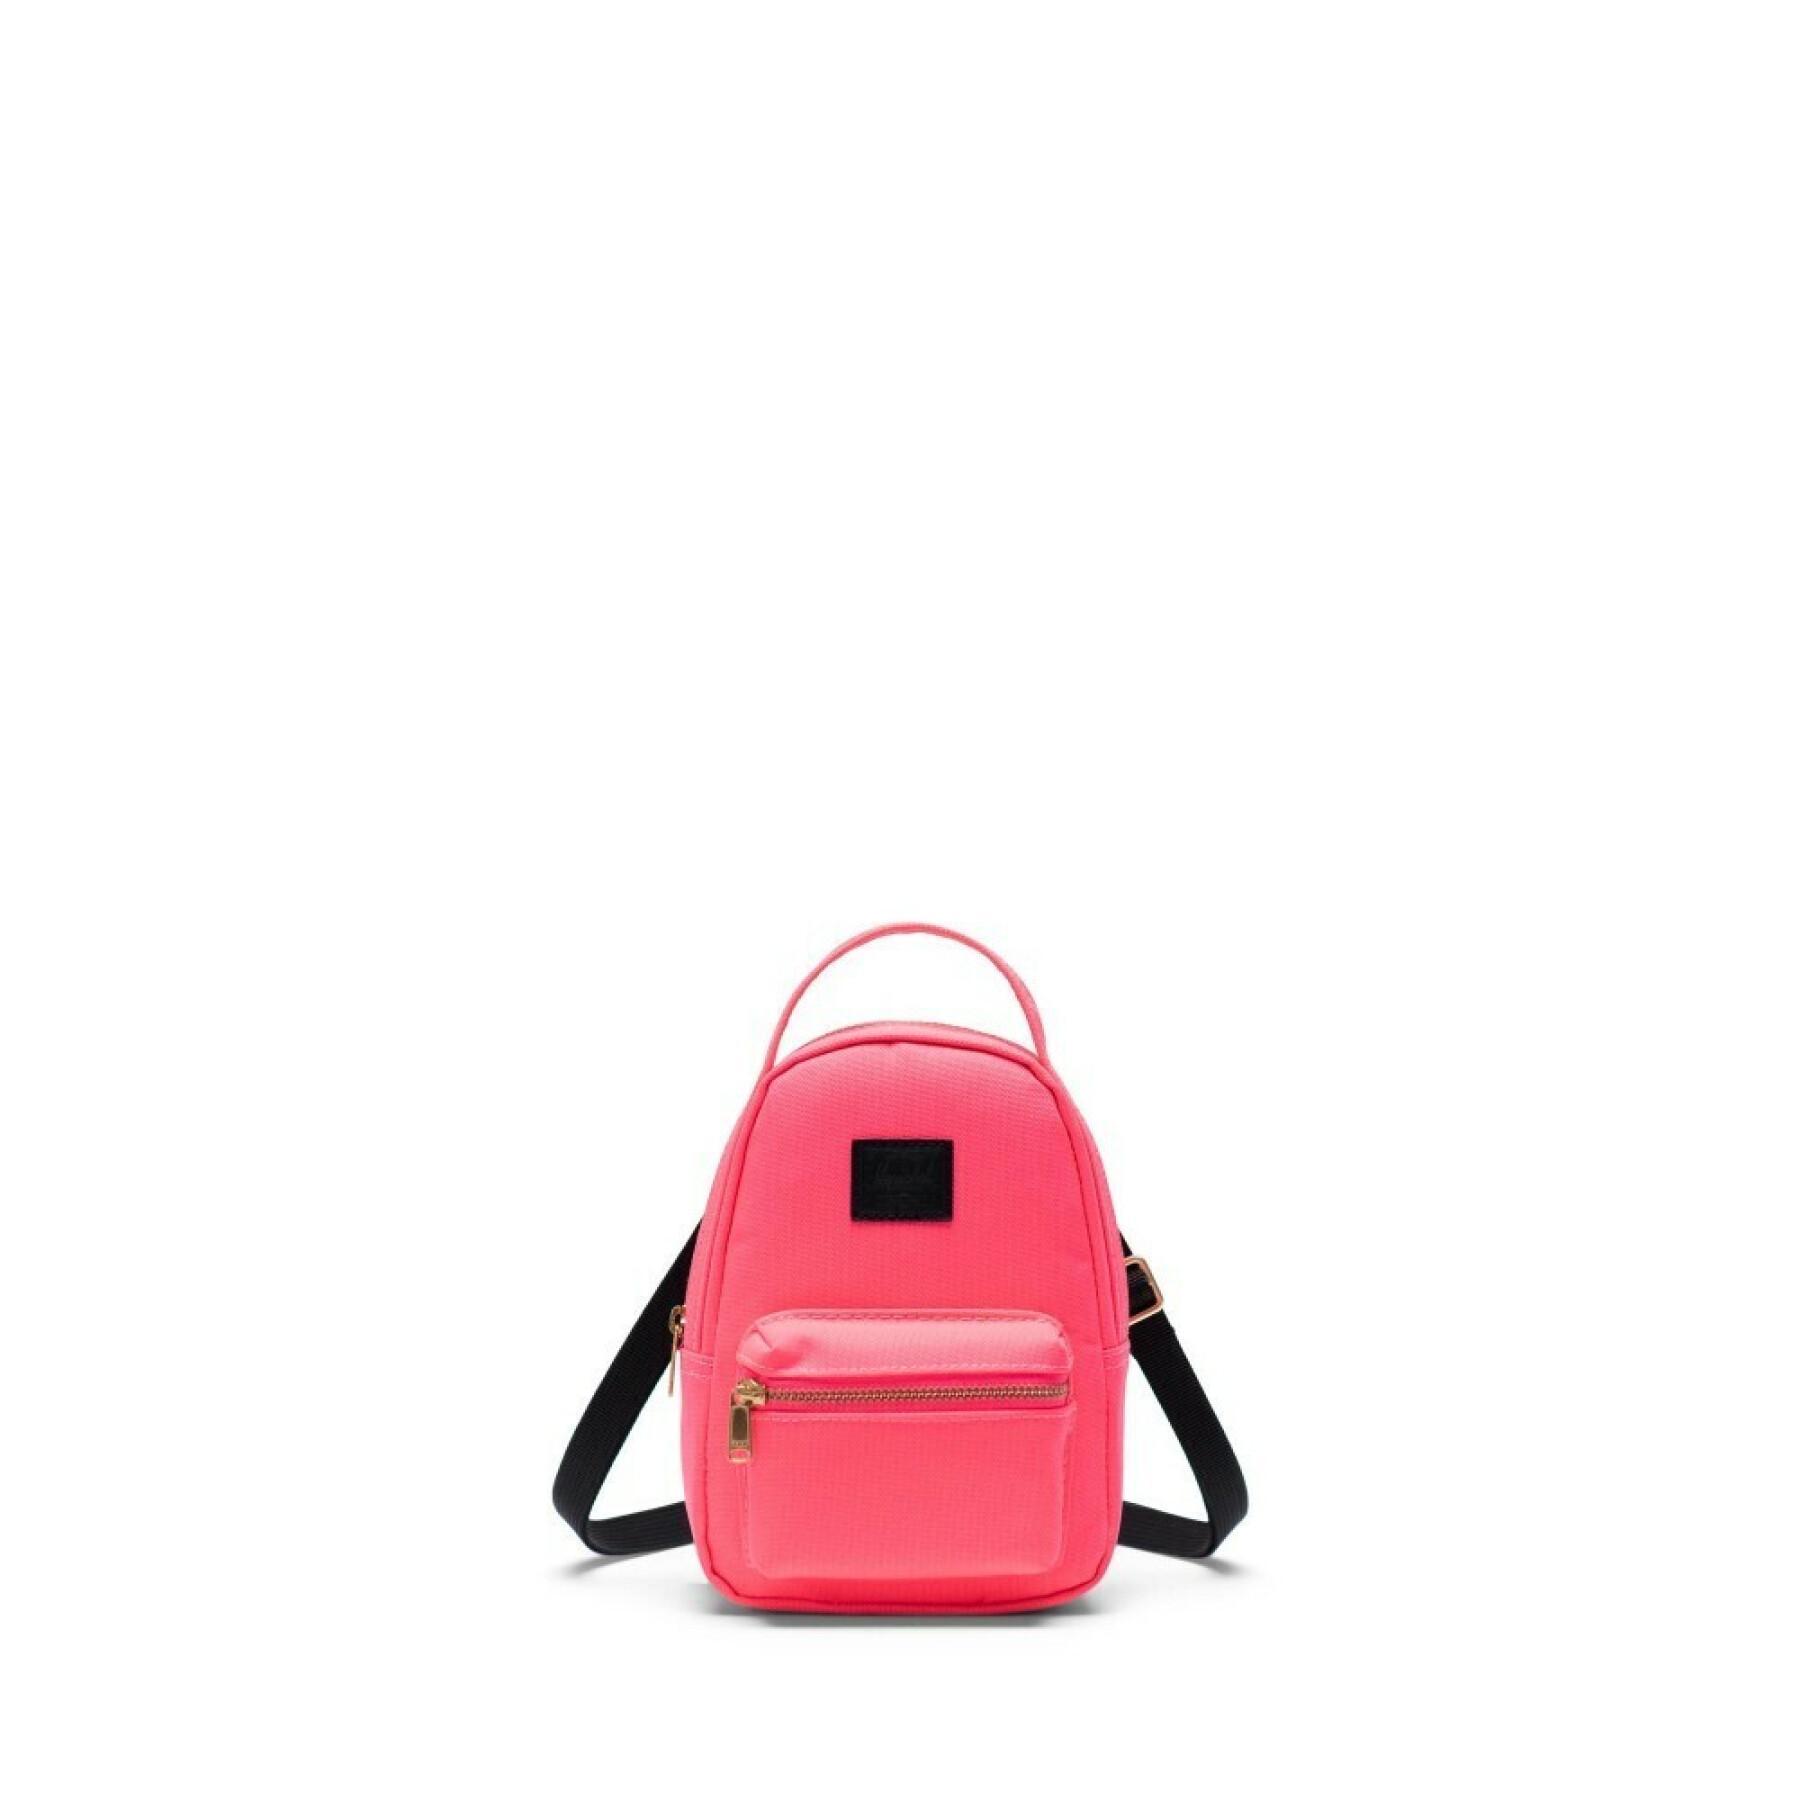 Women's backpack Herschel Nova